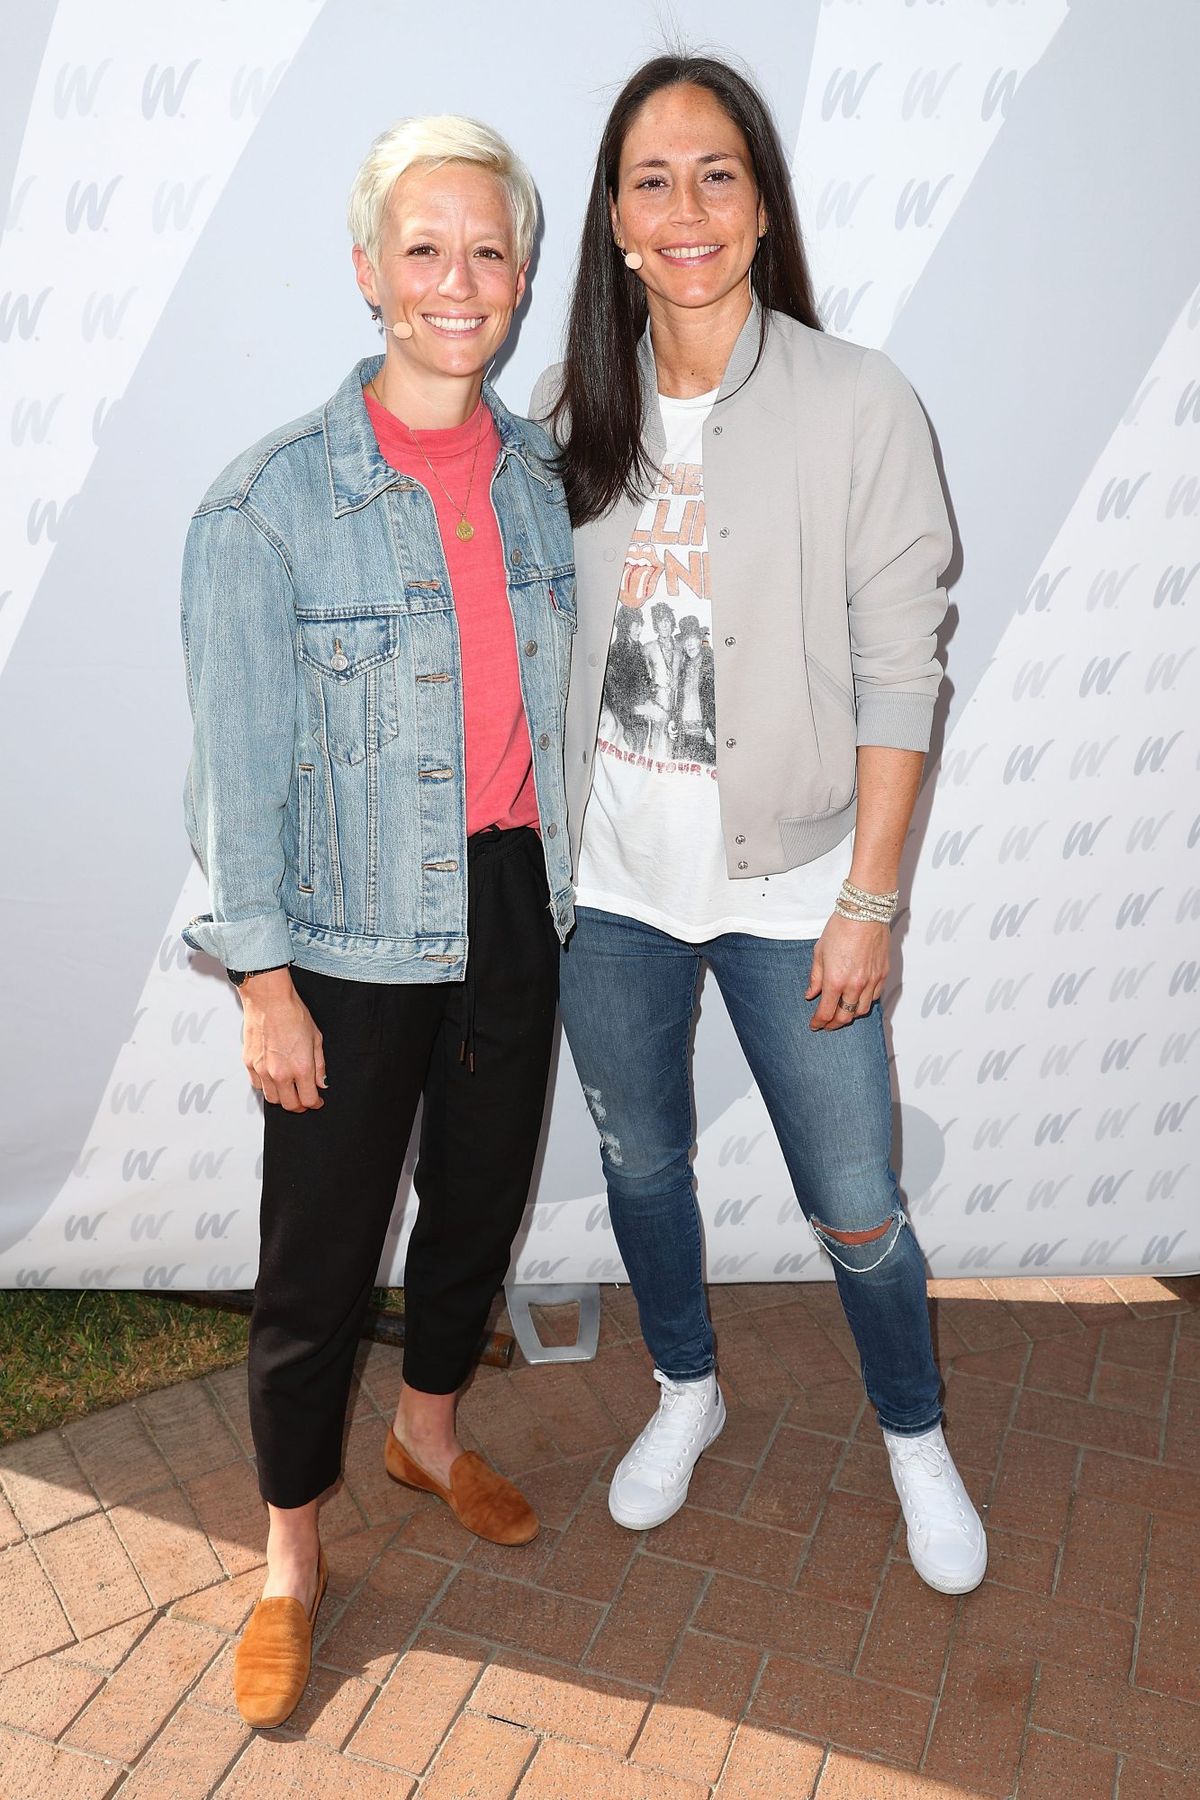 Megan Rapinoe und Sue Bird posieren gemeinsam auf dem roten Teppich des 8. jährlichen espnW: Women + Sports Summit-Events